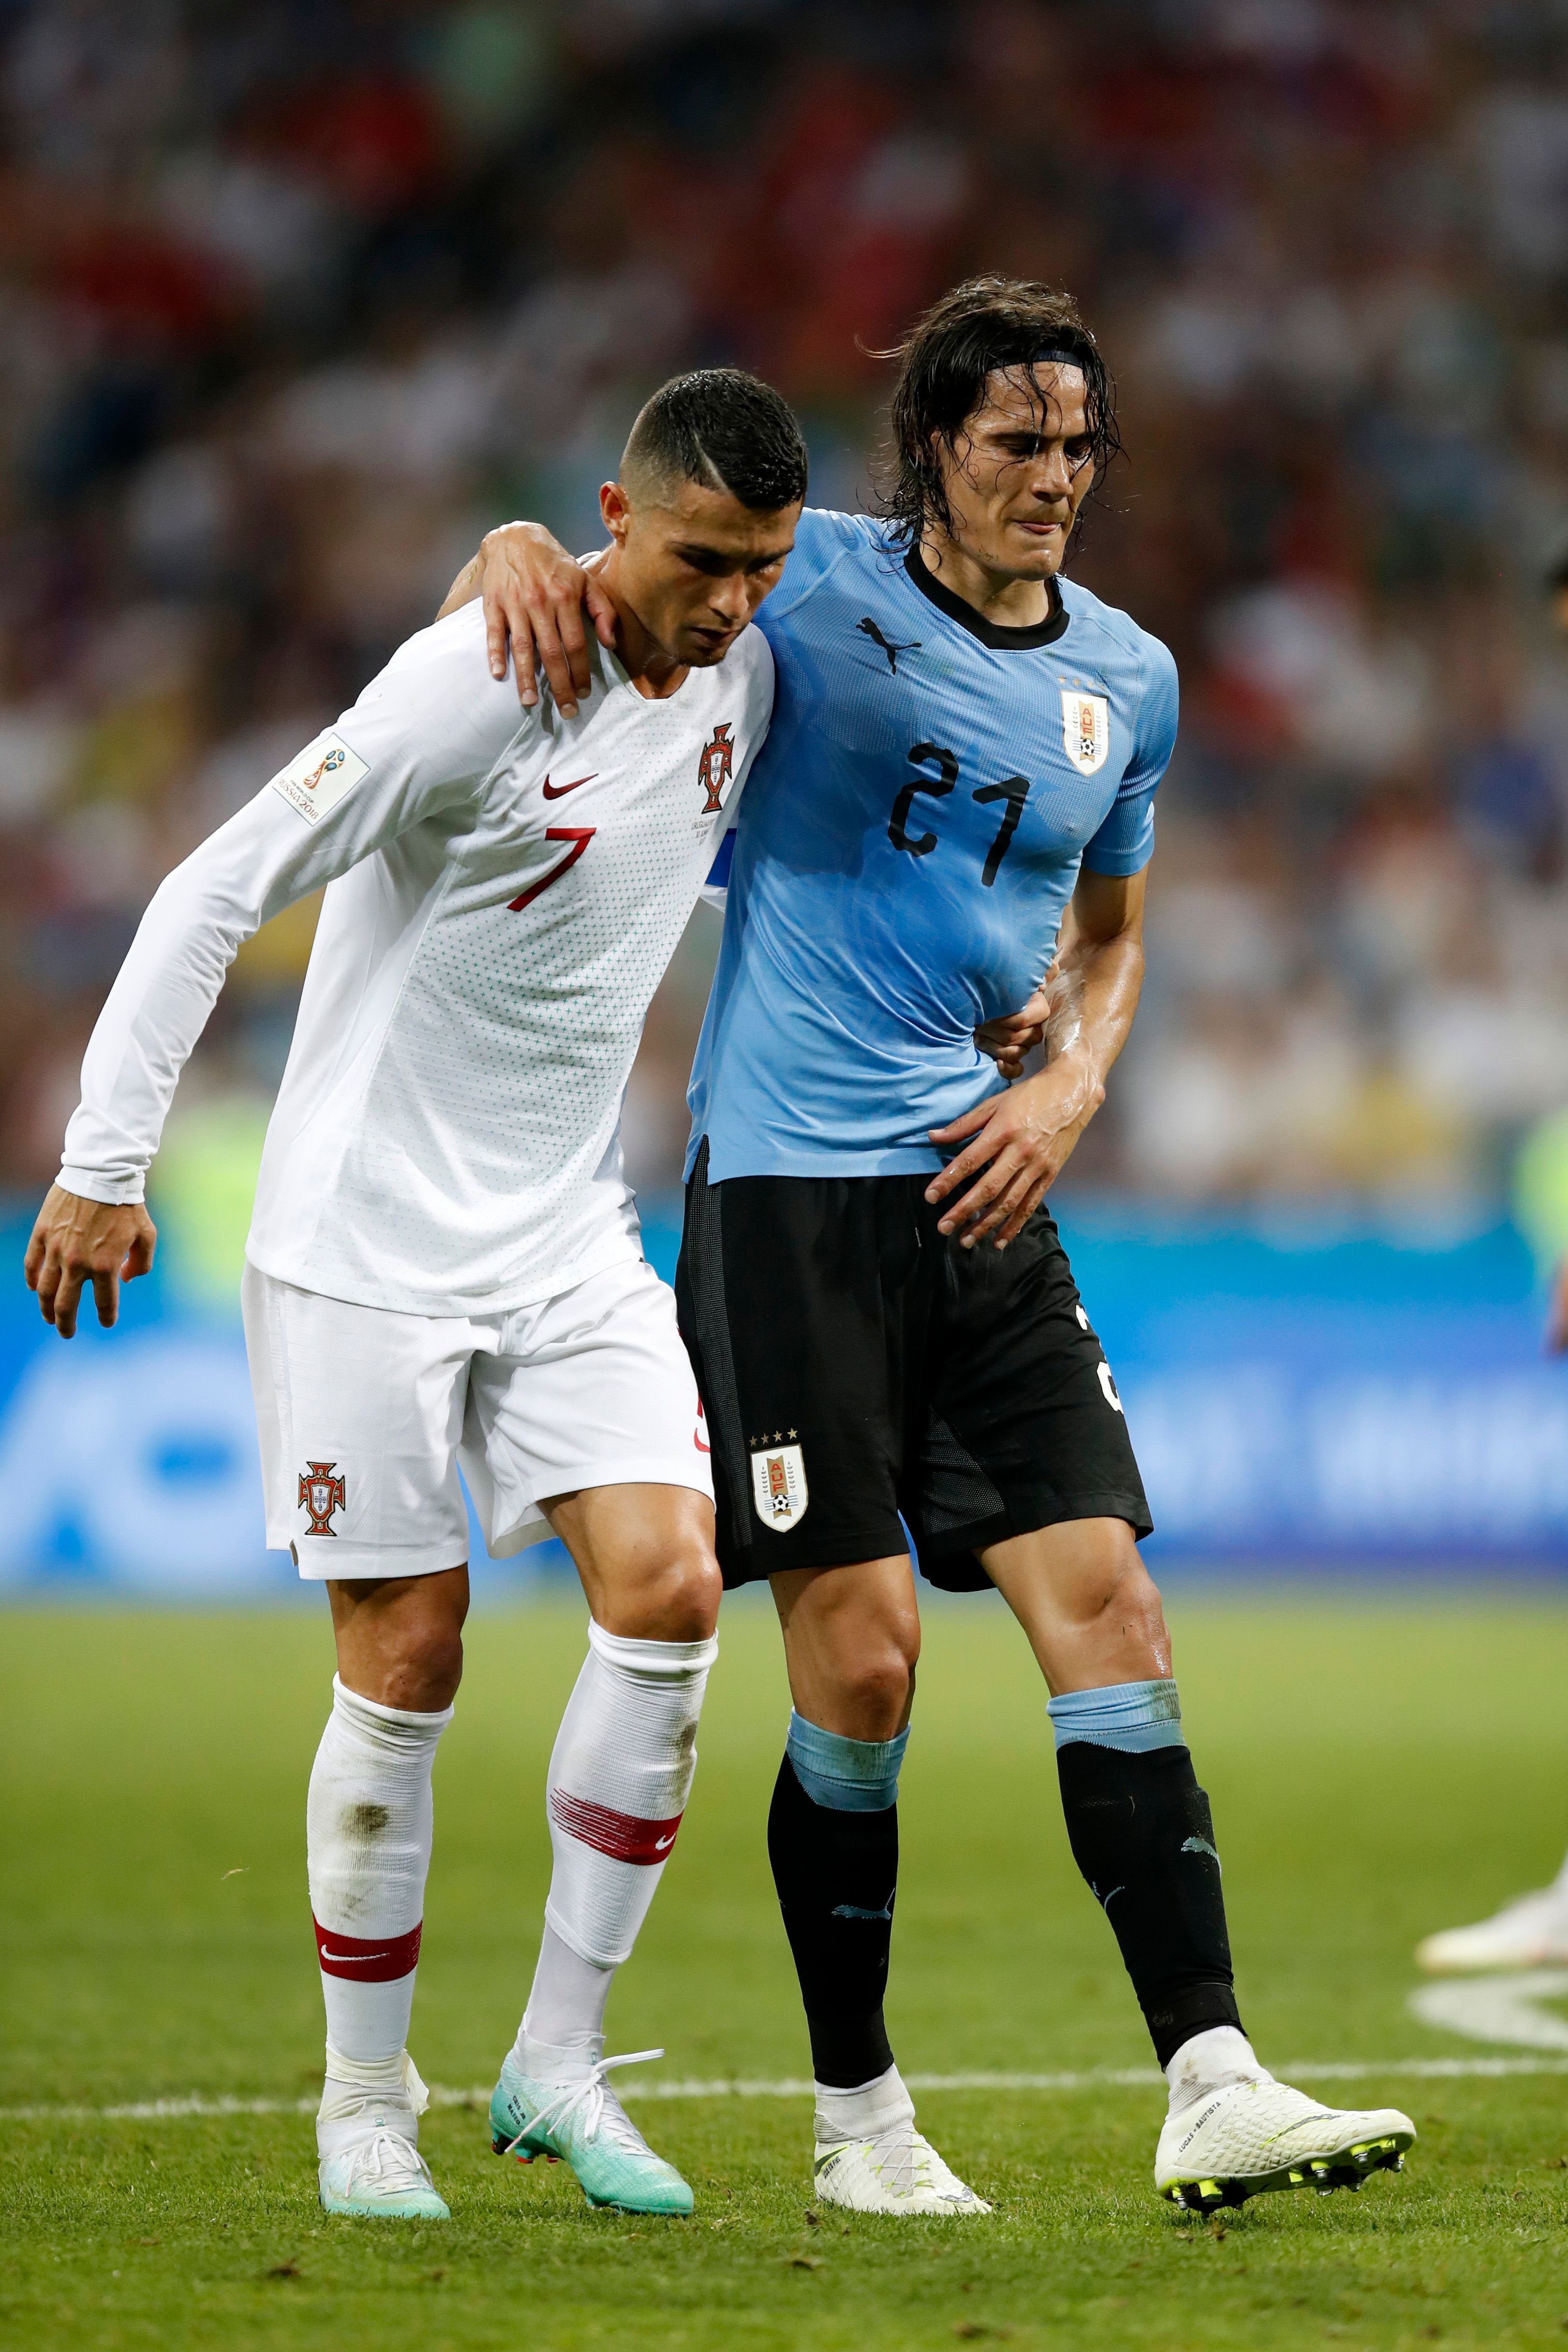 Ronaldo facing Uruguay at the 2018 World Cup.